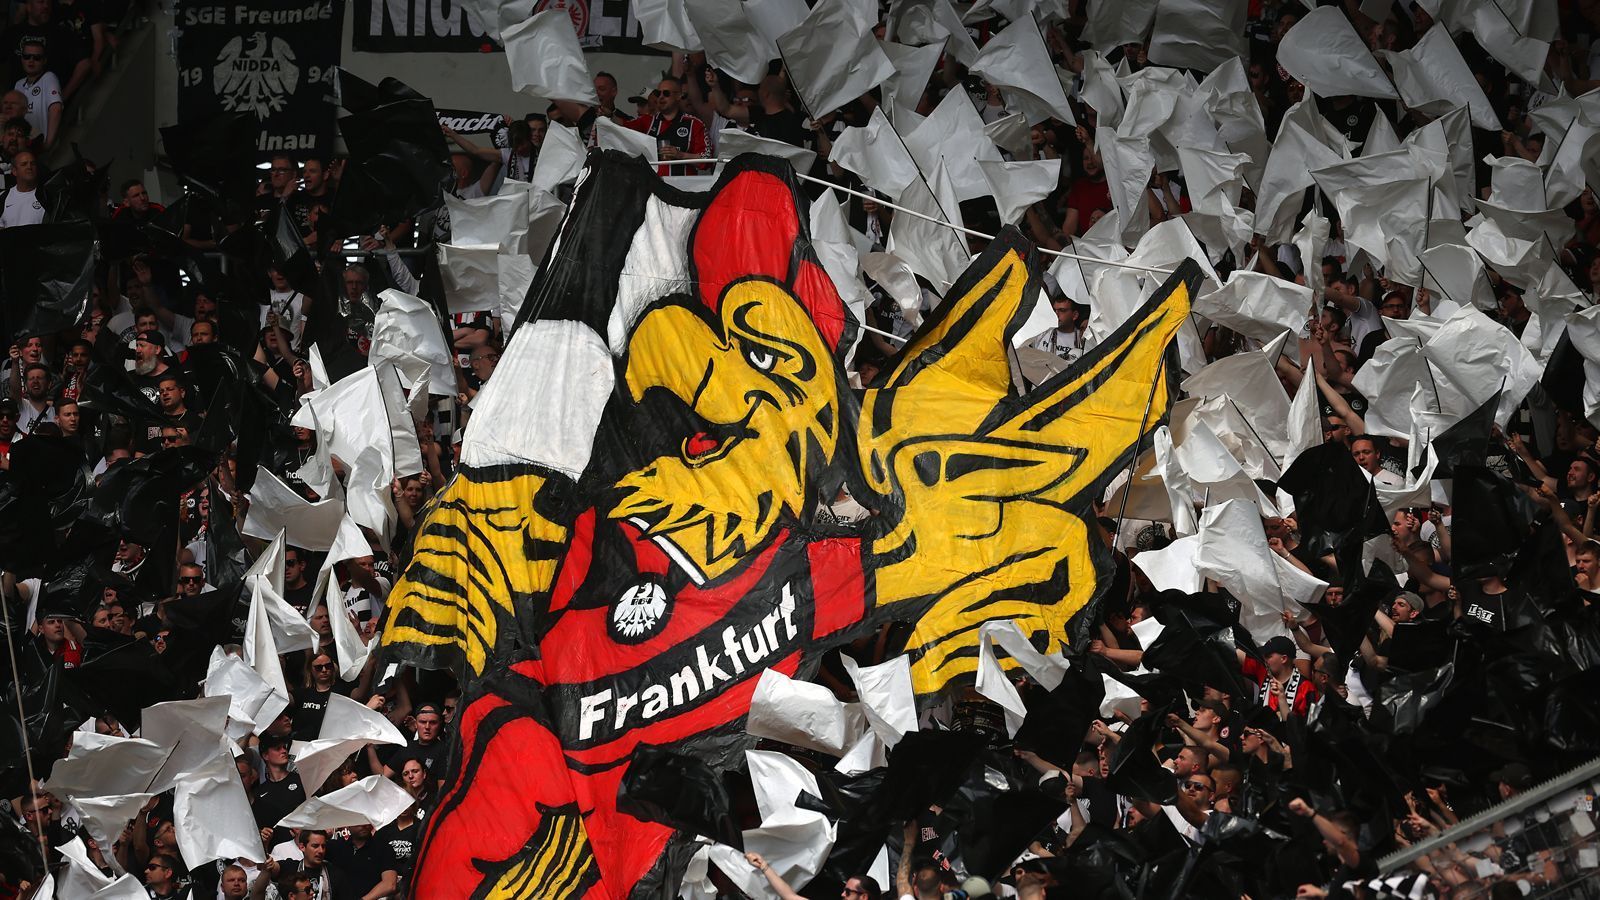 
                <strong>Platz 5 - Eintracht Frankfurt</strong><br>
                &#x2022; Durchschnittliche Anzahl an Auswärtsfans: 5.318<br>&#x2022; Höchste Anzahl an Auswärtsfahrern: 13.000 (in Sinsheim)<br>&#x2022; Niedrigste Anzahl an Auswärtsfahrern: 2.300 (in Bremen)<br>
              